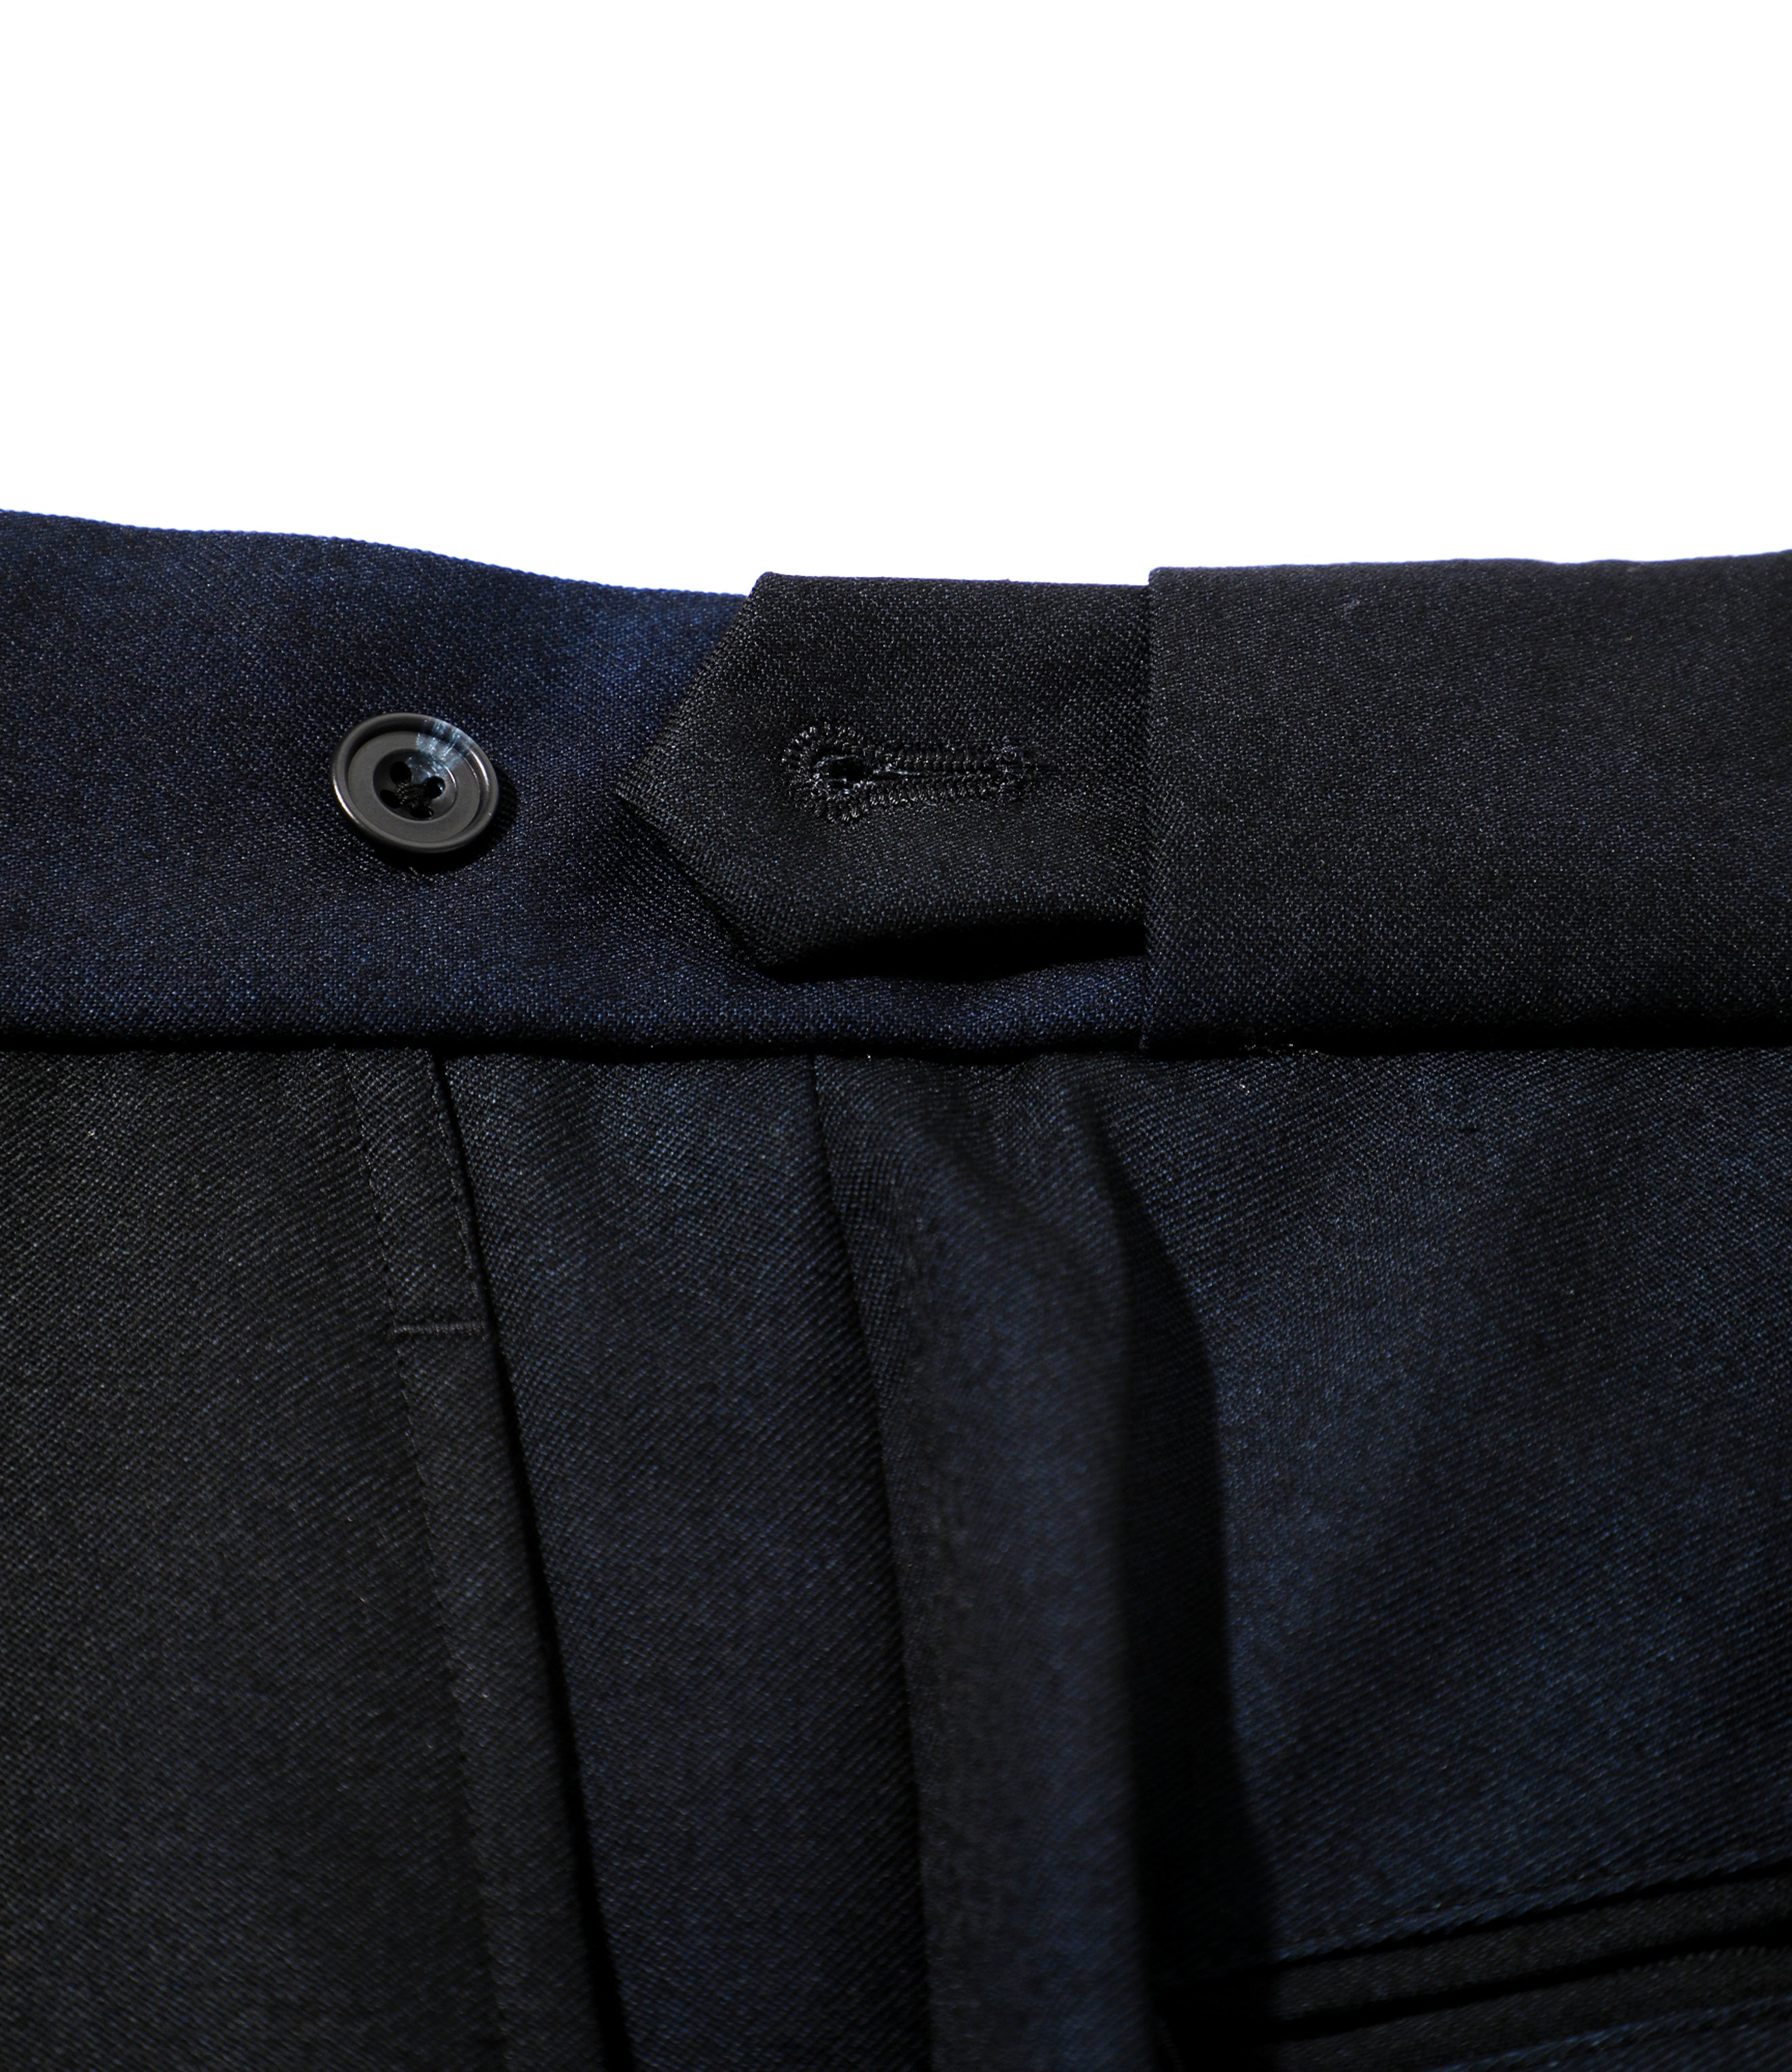 Side Tab Trouser - Navy Wool Gabardine / Uneven Dye